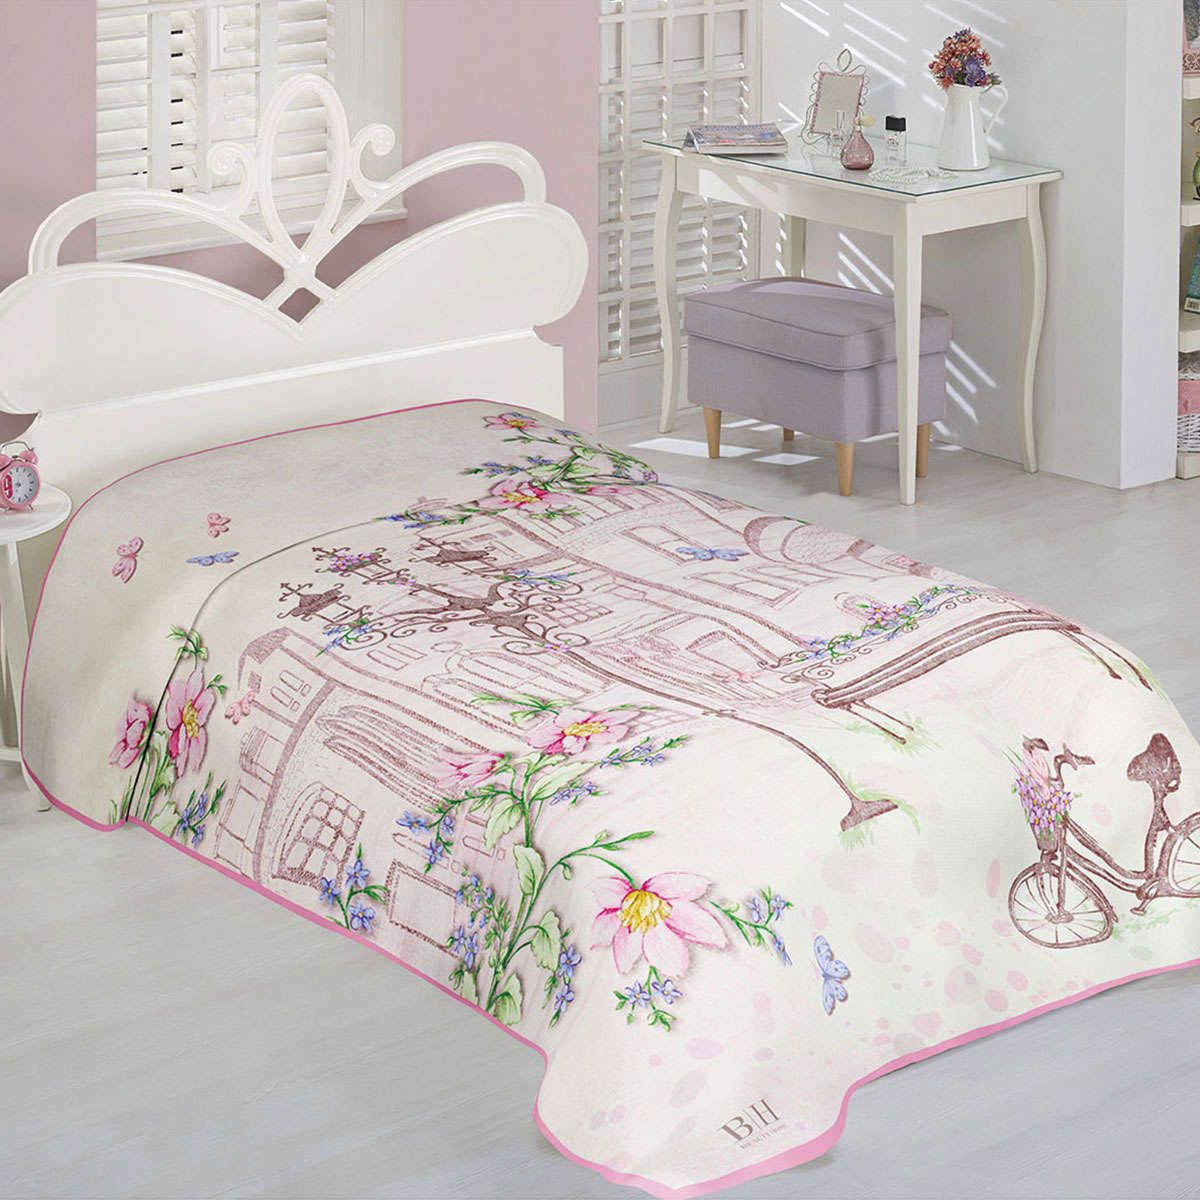 Παιδική κουβέρτα μονή Romantic Art 6107 beauty home